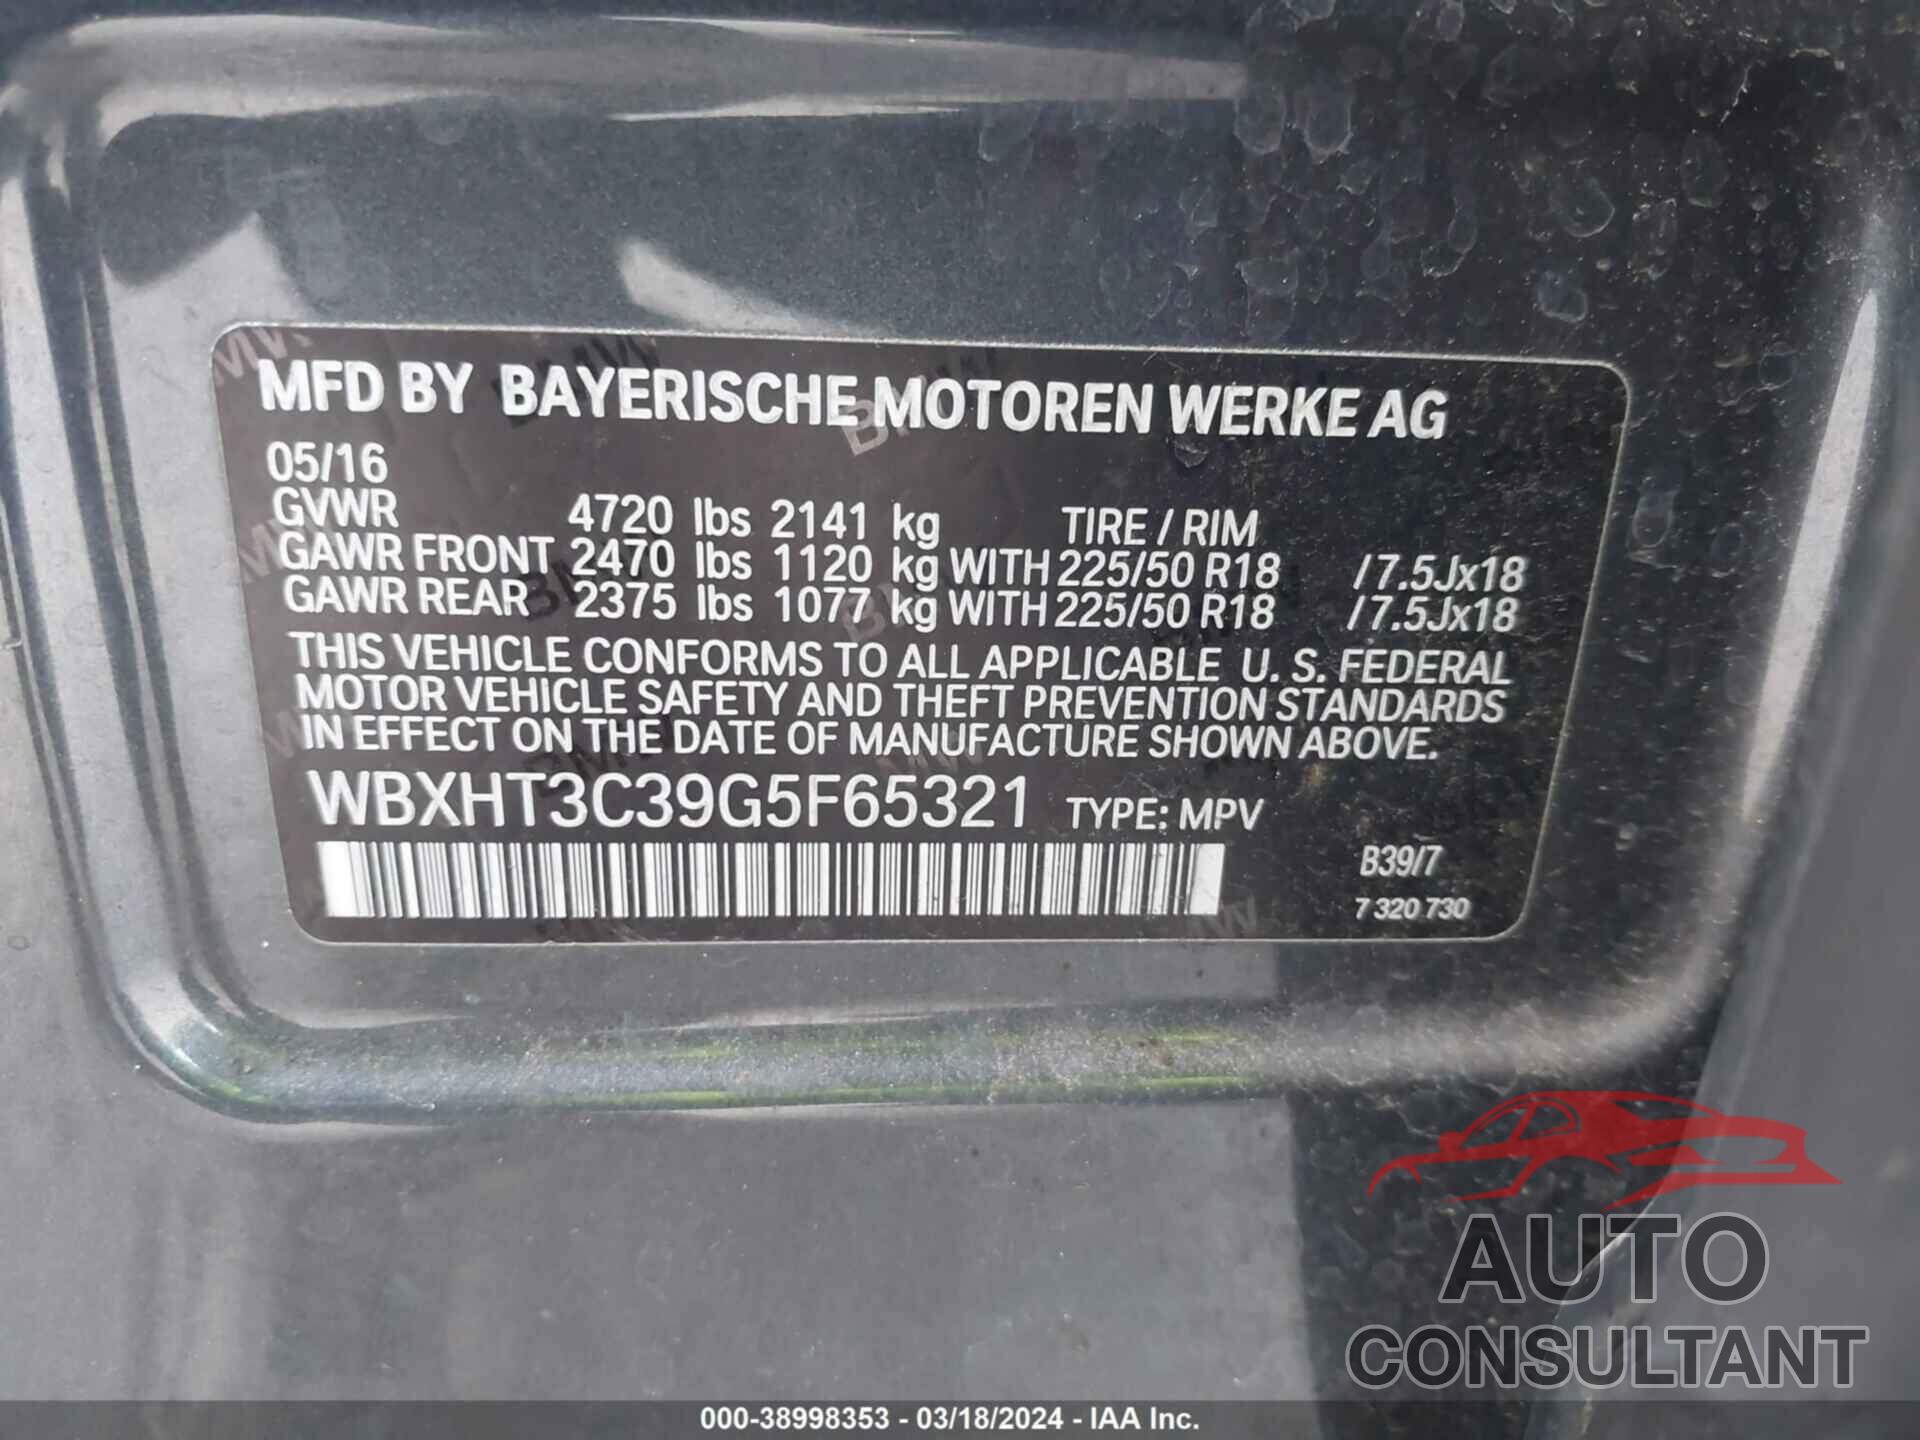 BMW X1 2016 - WBXHT3C39G5F65321